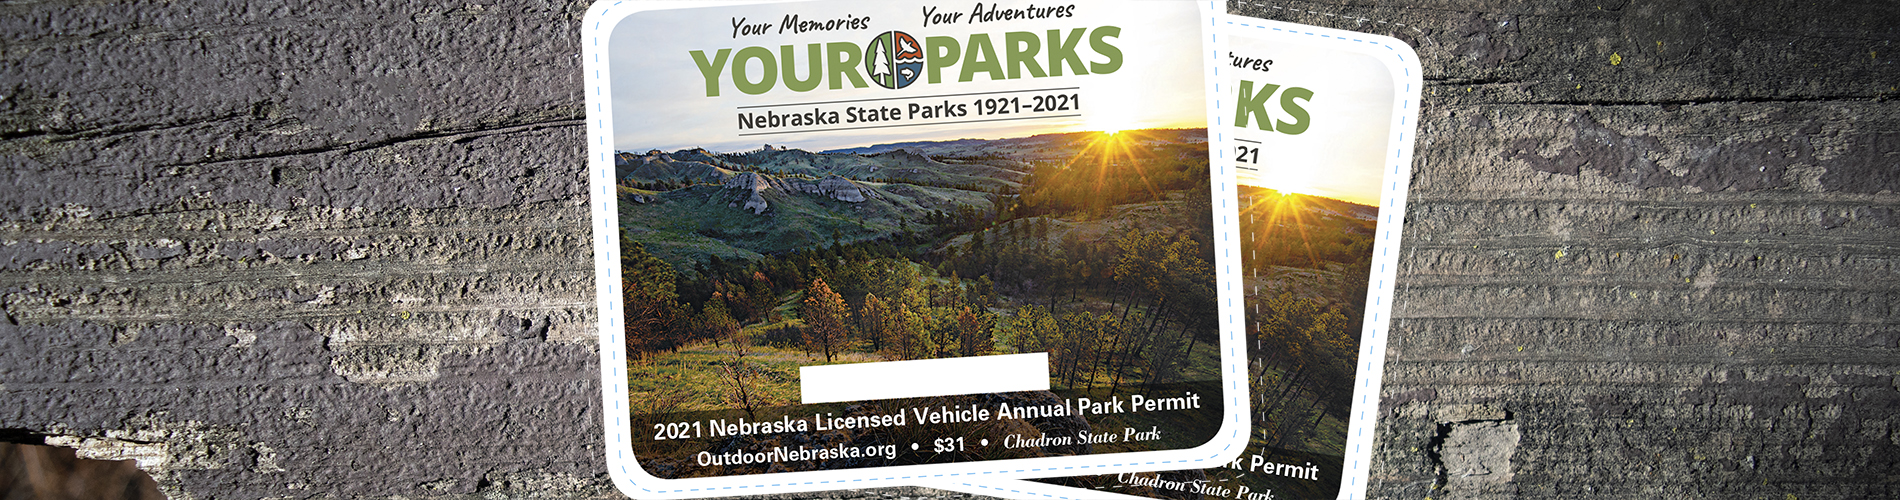 Parks permit pass image